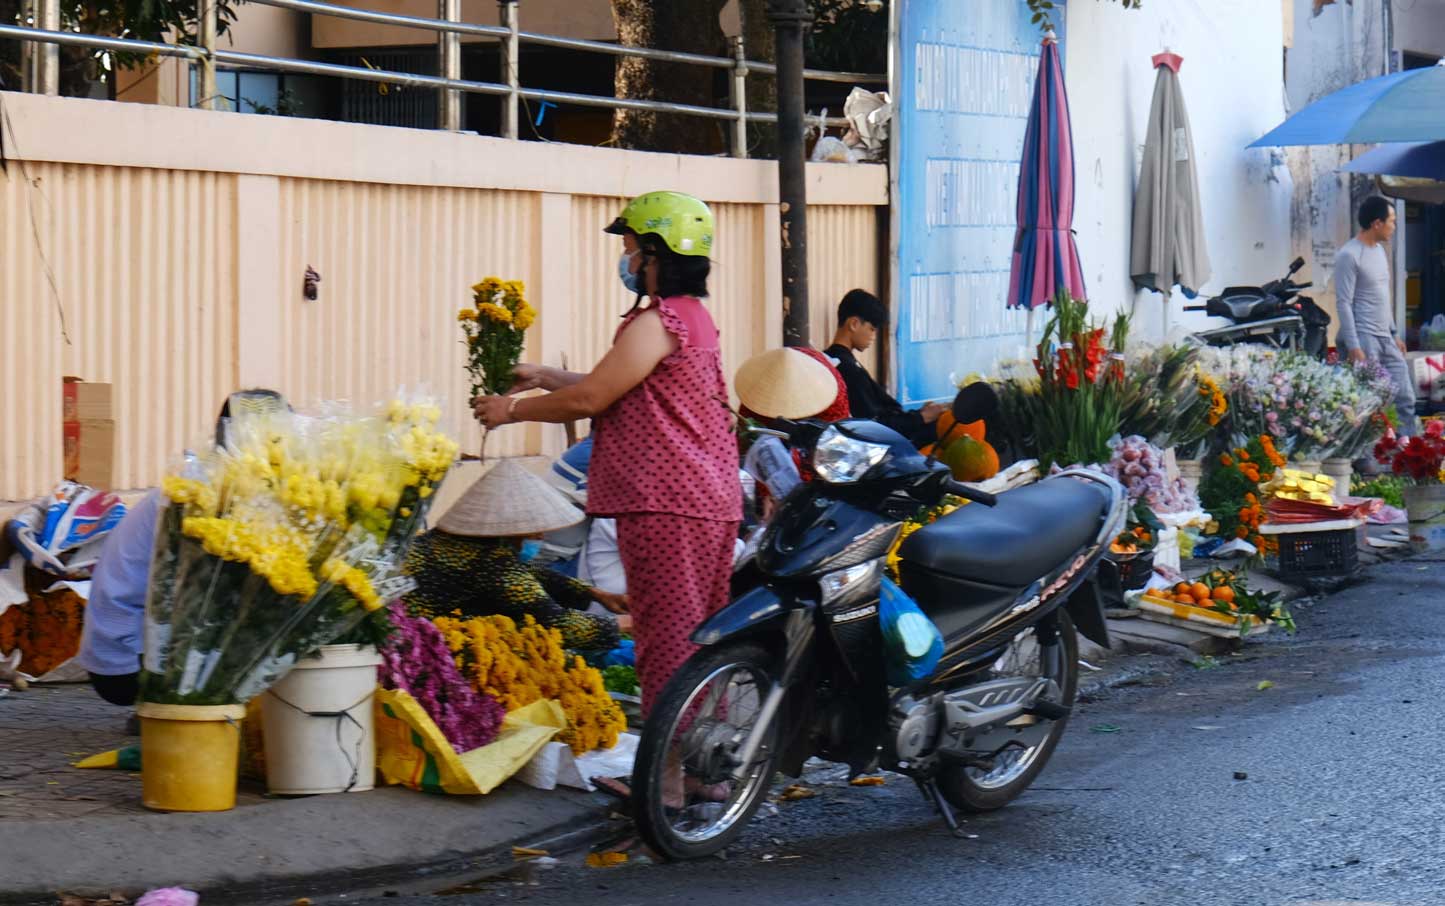 Tiểu thương Huỳnh Thị Tuyết chia sẻ, sau Tết, giá các loại hoa hầu hết đều giảm mạnh từ 30.000 đồng đến hơn 100.000 đồng, tùy loại. Trong đó, cúc và vạn thọ có giá rẻ nhất, chỉ 20.000 - 30.000 đồng/bó.